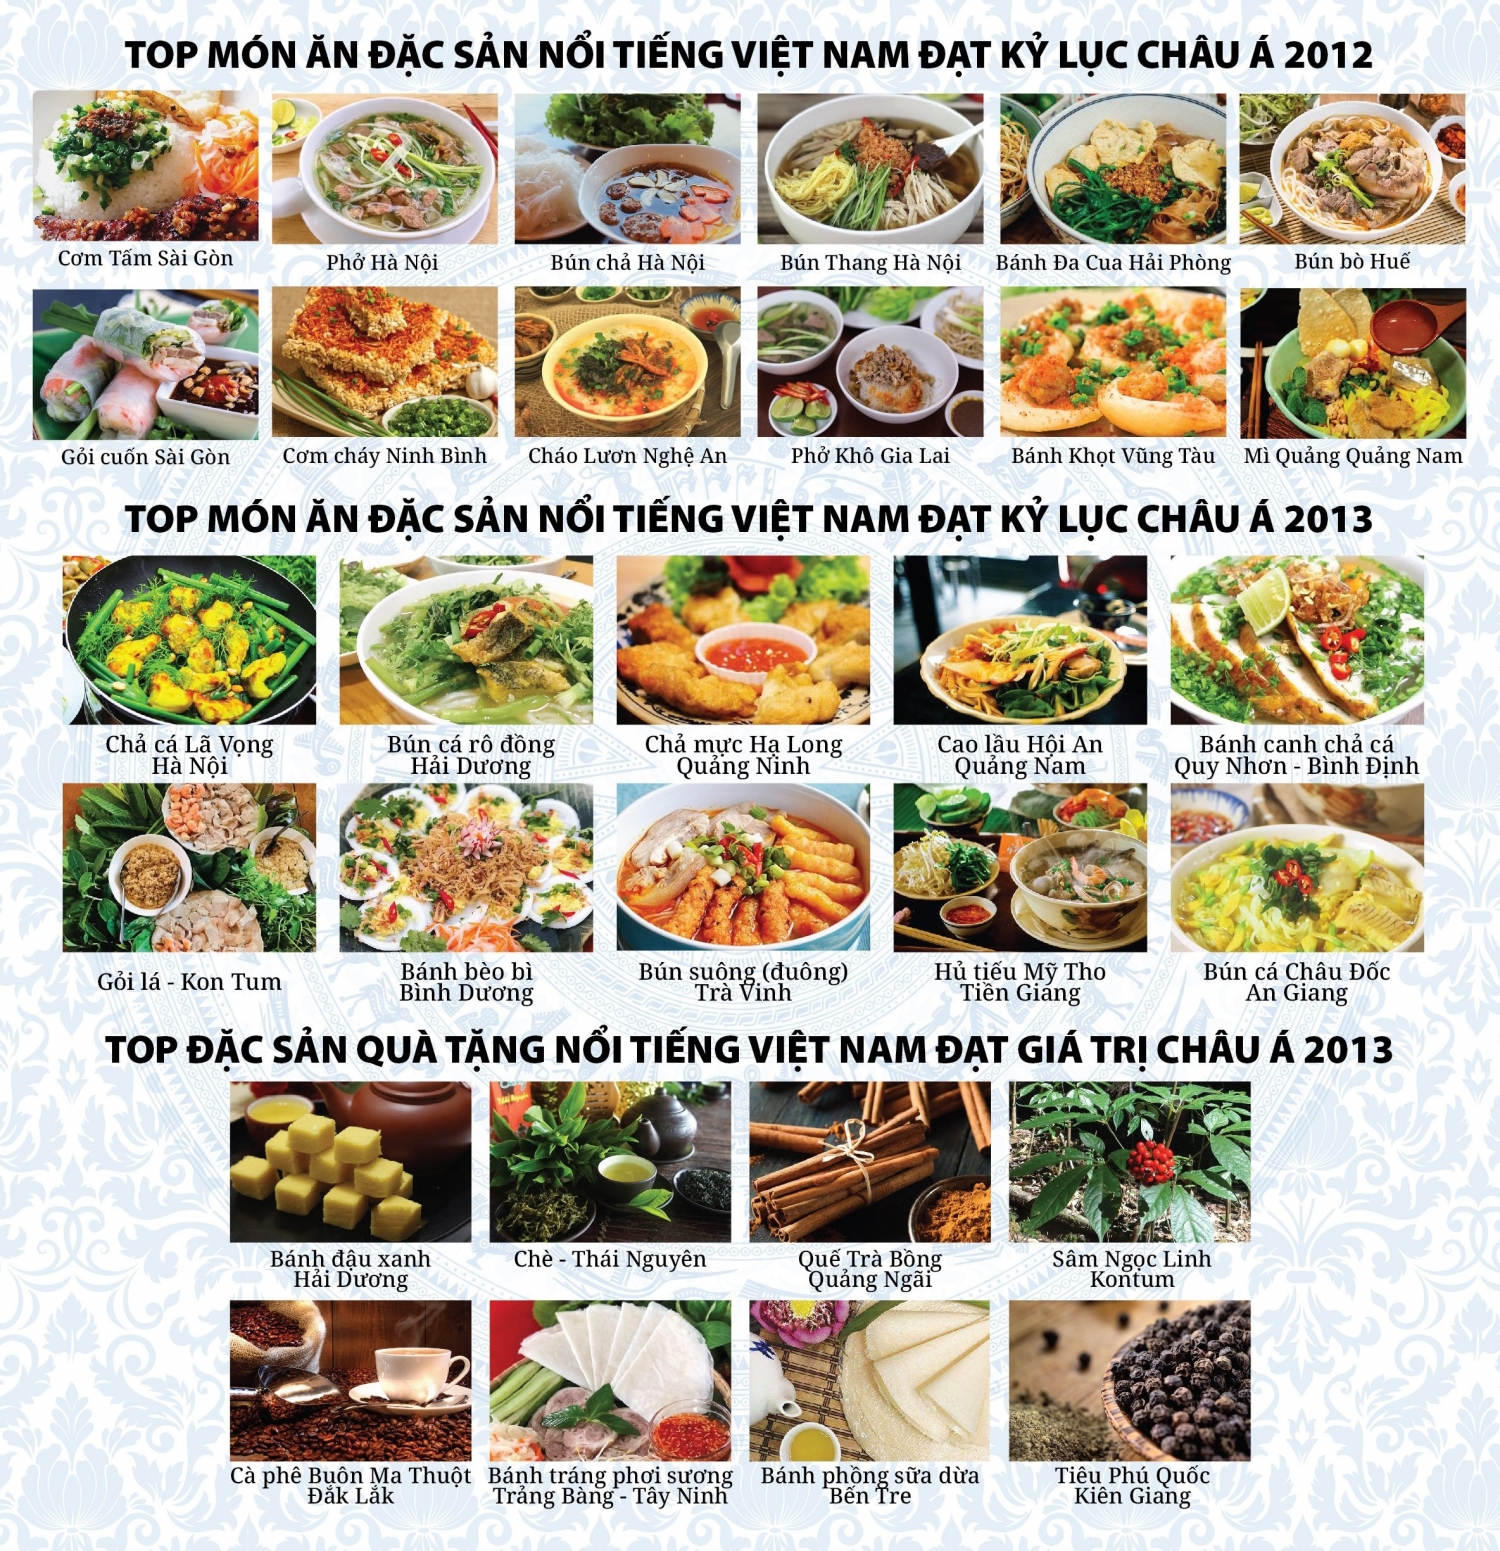 Với sự pha trộn độc đáo giữa các nền ẩm thực châu Á, ẩm thực Việt Nam đã tạo ra một phong cách độc đáo, đầy cảm hứng và tinh tế. Hãy đến và thưởng thức những món ăn đặc trưng như phở, bún chả, nem, bánh xèo,...và cảm nhận sự tuyệt vời của ẩm thực châu Á đang sống động tại Việt Nam.